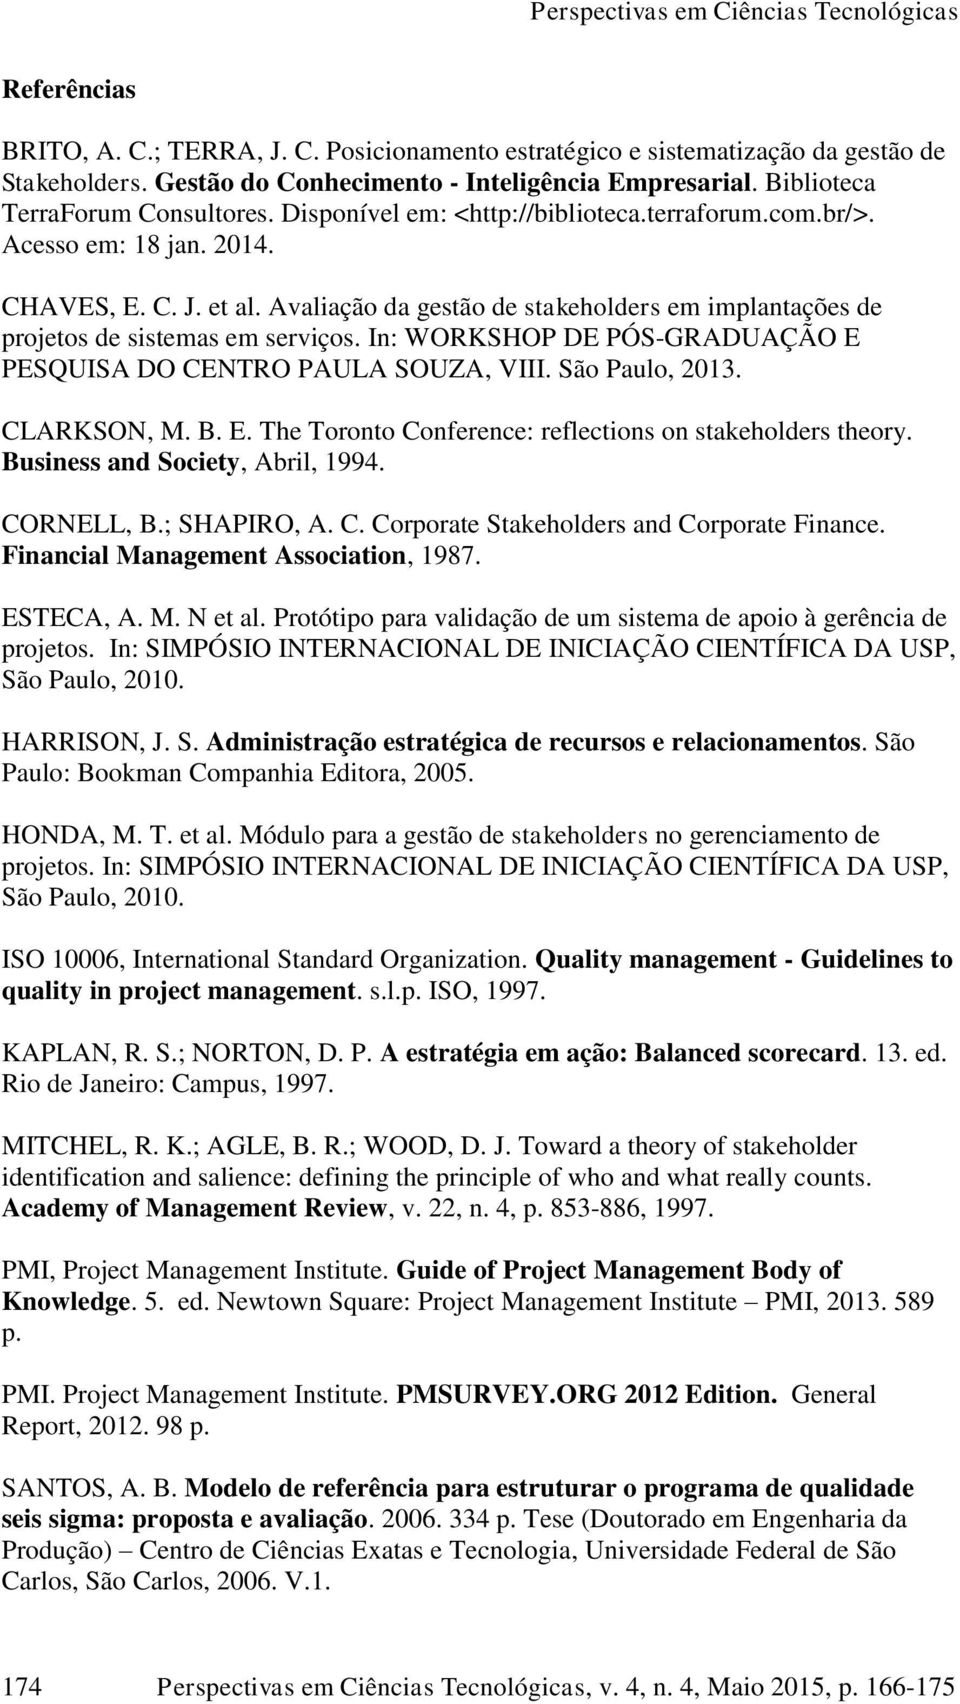 In: WORKSHOP DE PÓS-GRADUAÇÃO E PESQUISA DO CENTRO PAULA SOUZA, VIII. São Paulo, 2013. CLARKSON, M. B. E. The Toronto Conference: reflections on stakeholders theory. Business and Society, Abril, 1994.